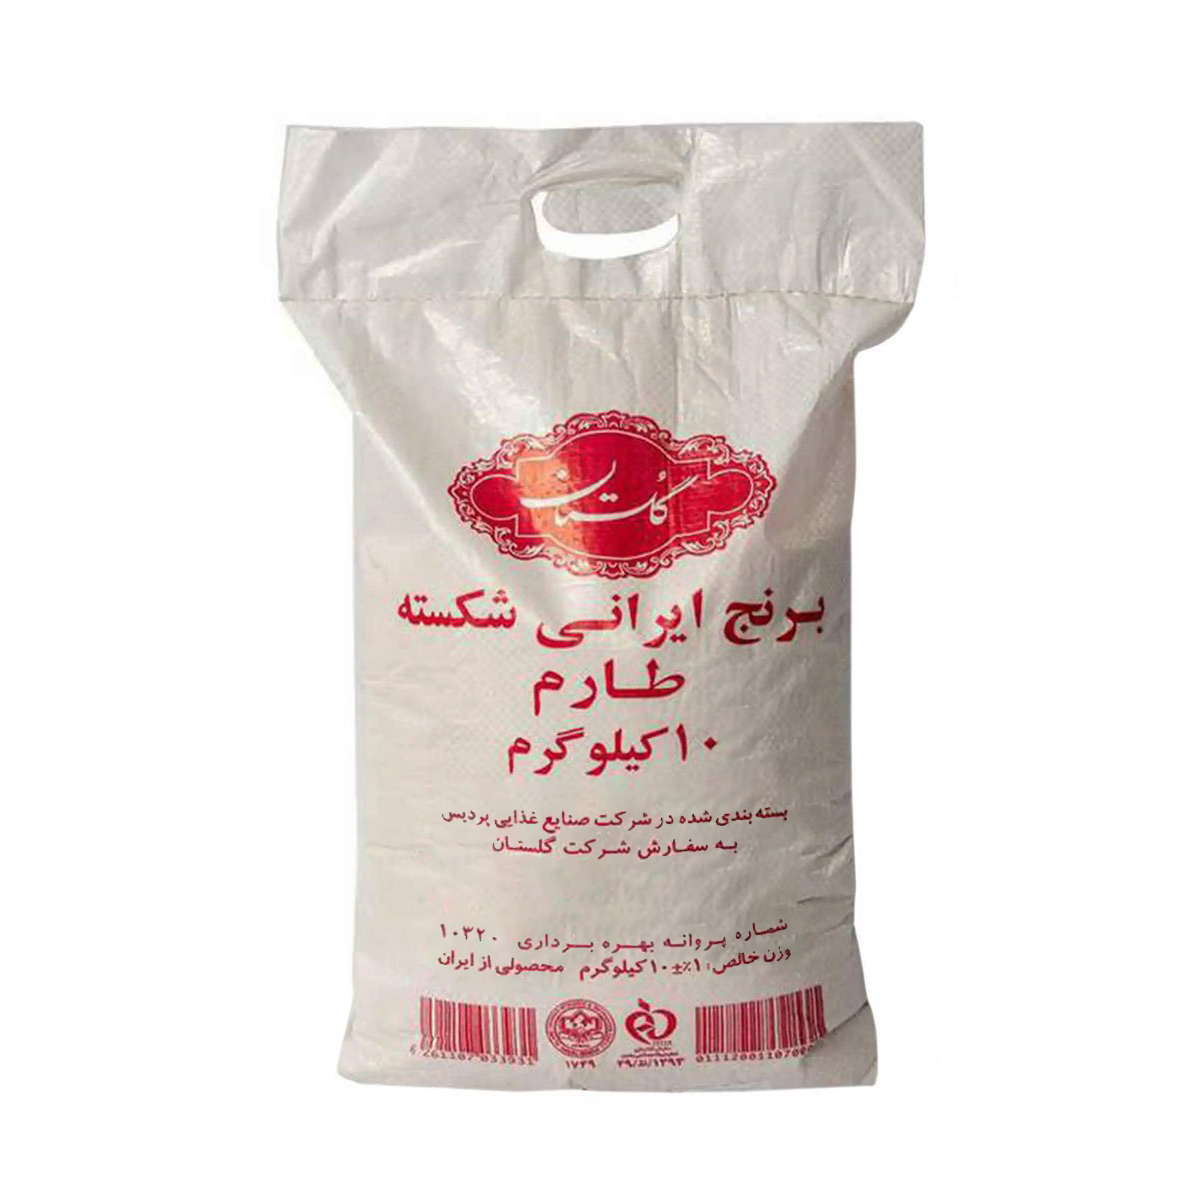 نکته خرید - قیمت روز برنج ایرانی شکسته طارم گلستان - 10 کیلوگرم خرید